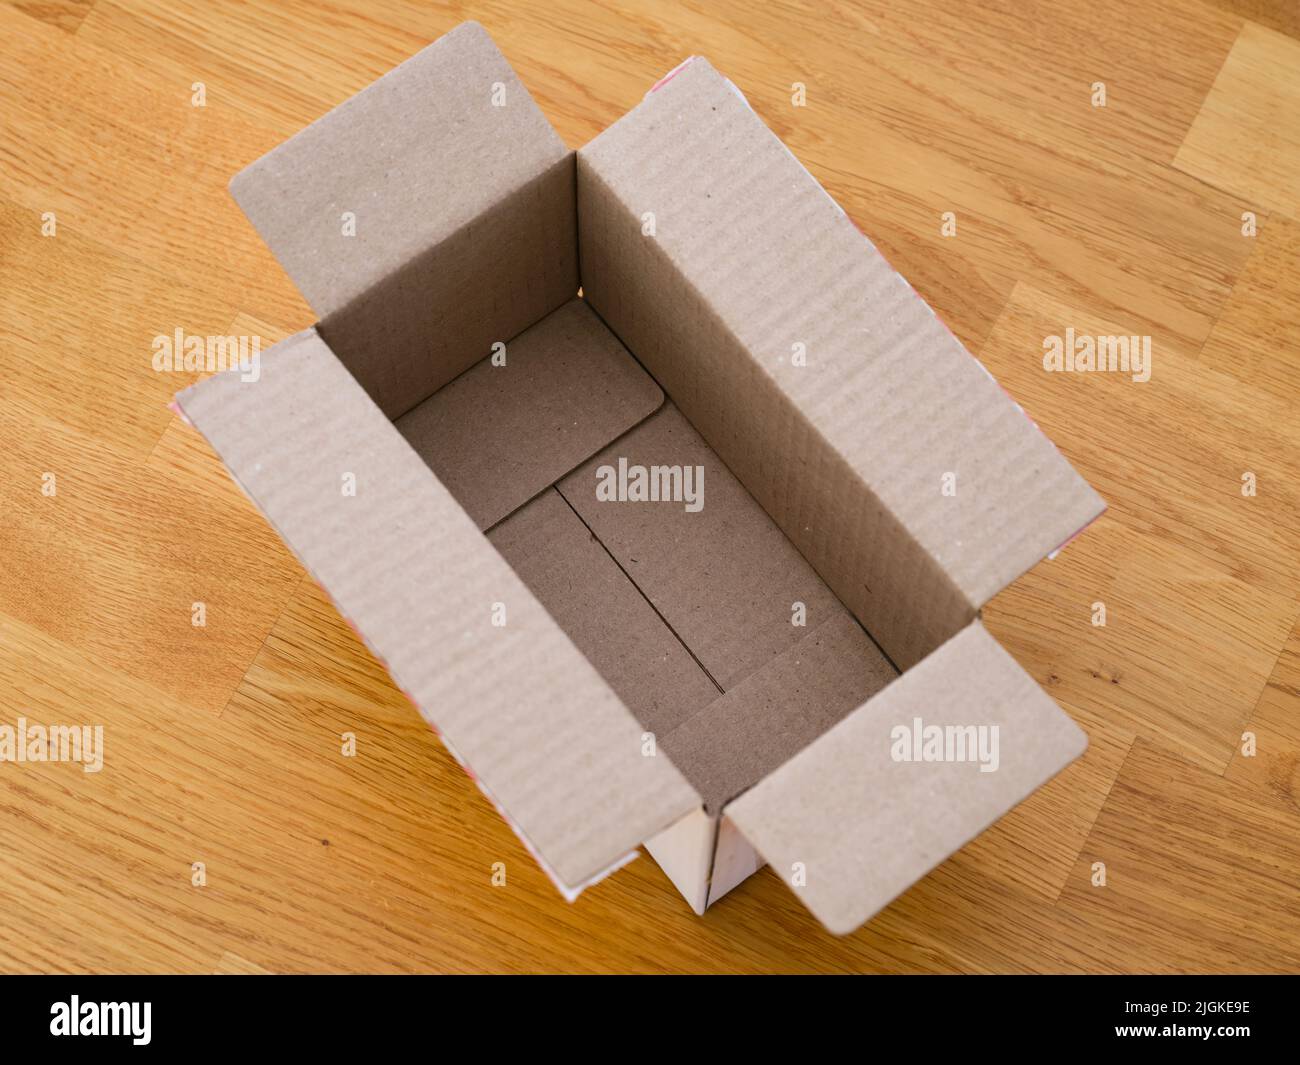 Una caja de cartón abierta vacía sobre un suelo de parqué Foto de stock